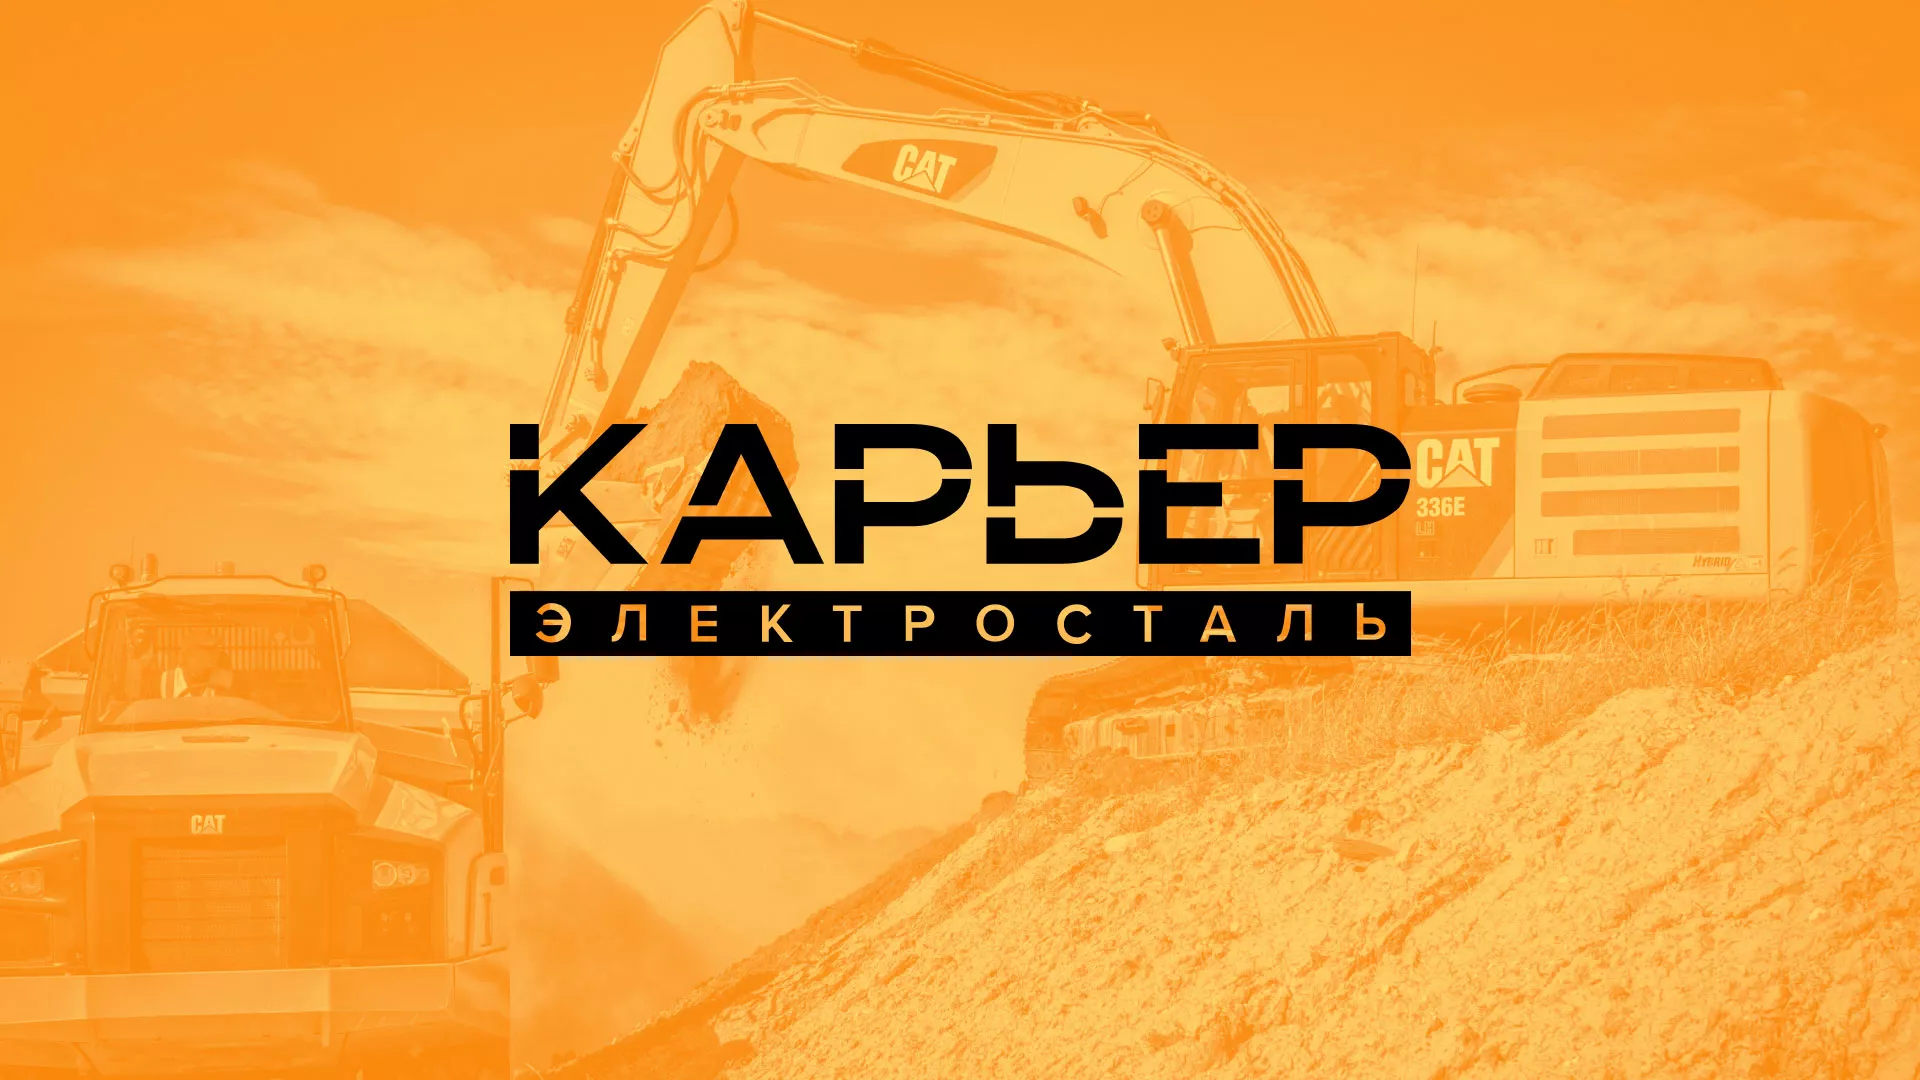 Разработка сайта по продаже нерудных материалов «Карьер» в Славгороде